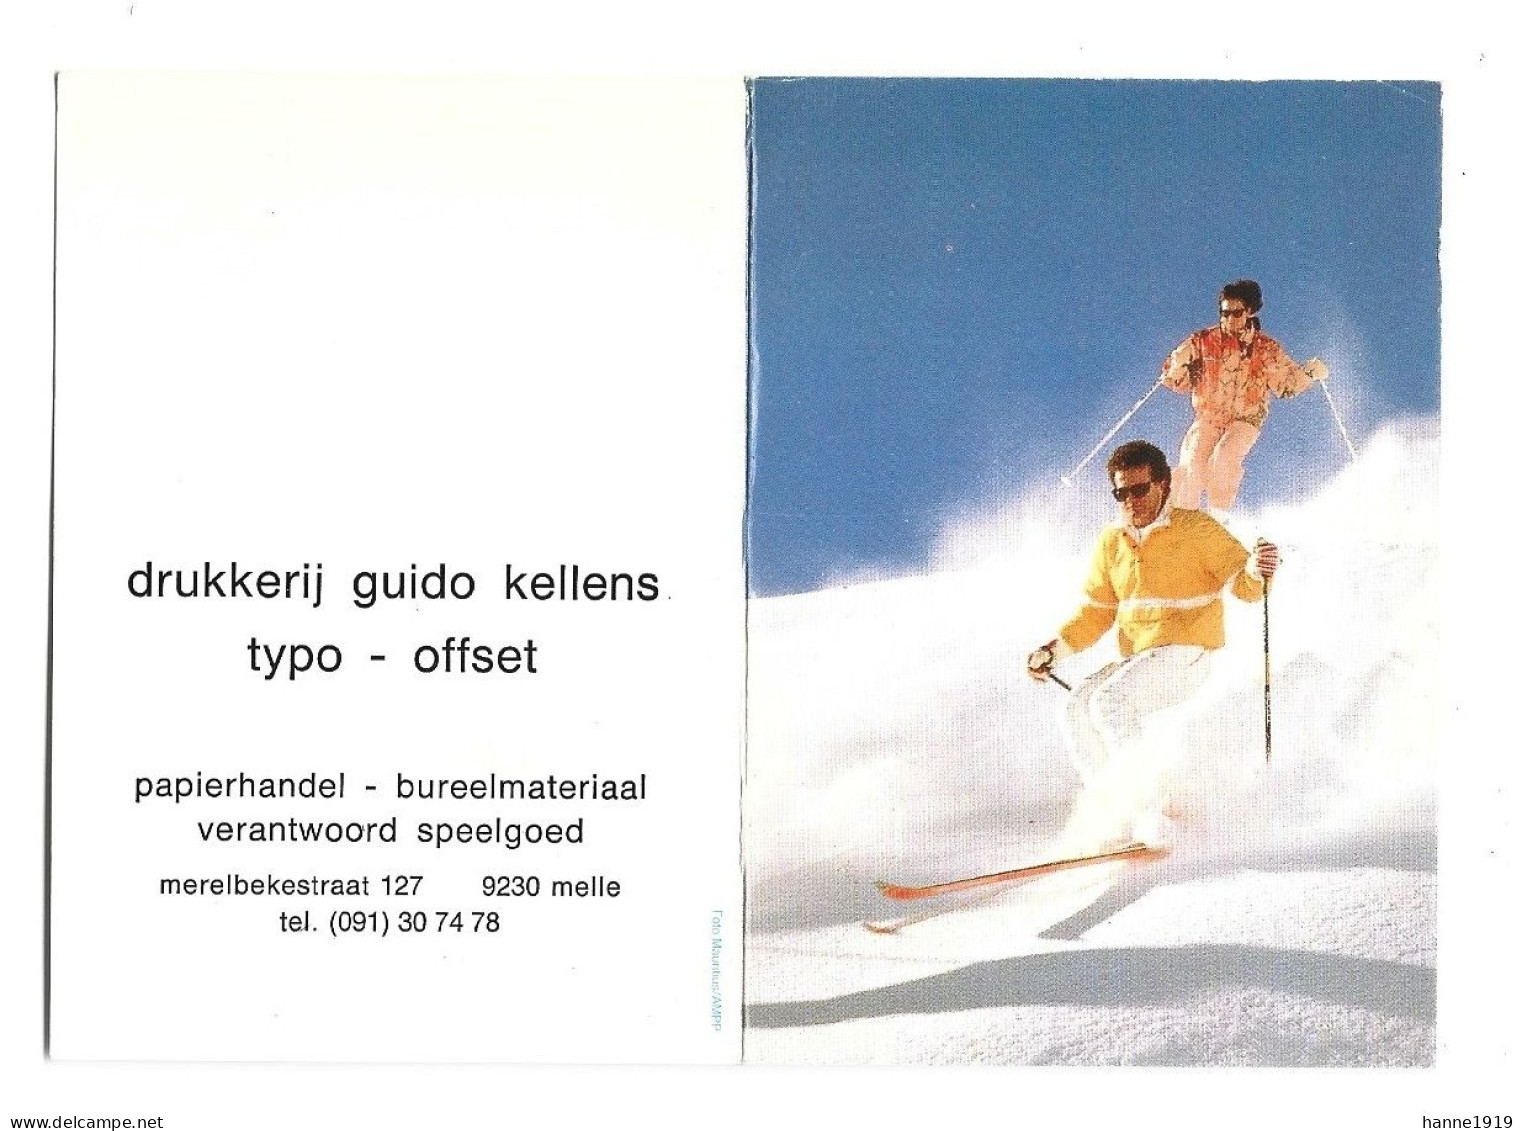 Melle Merelbekestraat Drukkerij Guido Kellens Kalender 1990 Calendrier Htje - Tamaño Pequeño : 1981-90